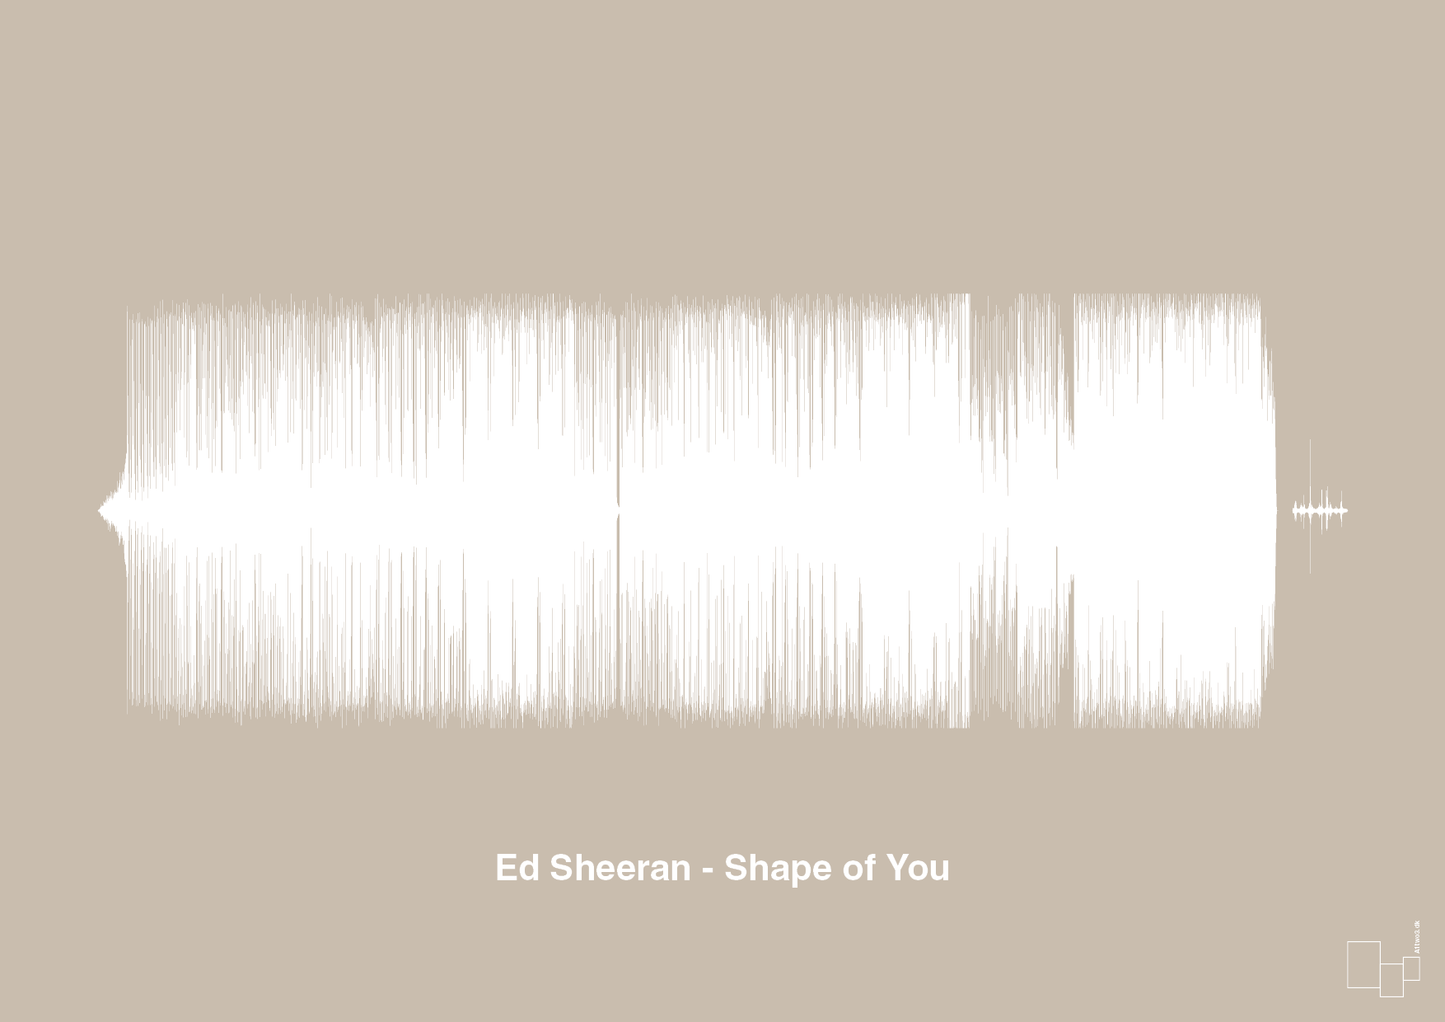 ed sheeran - shape of you - Plakat med Musik i Creamy Mushroom